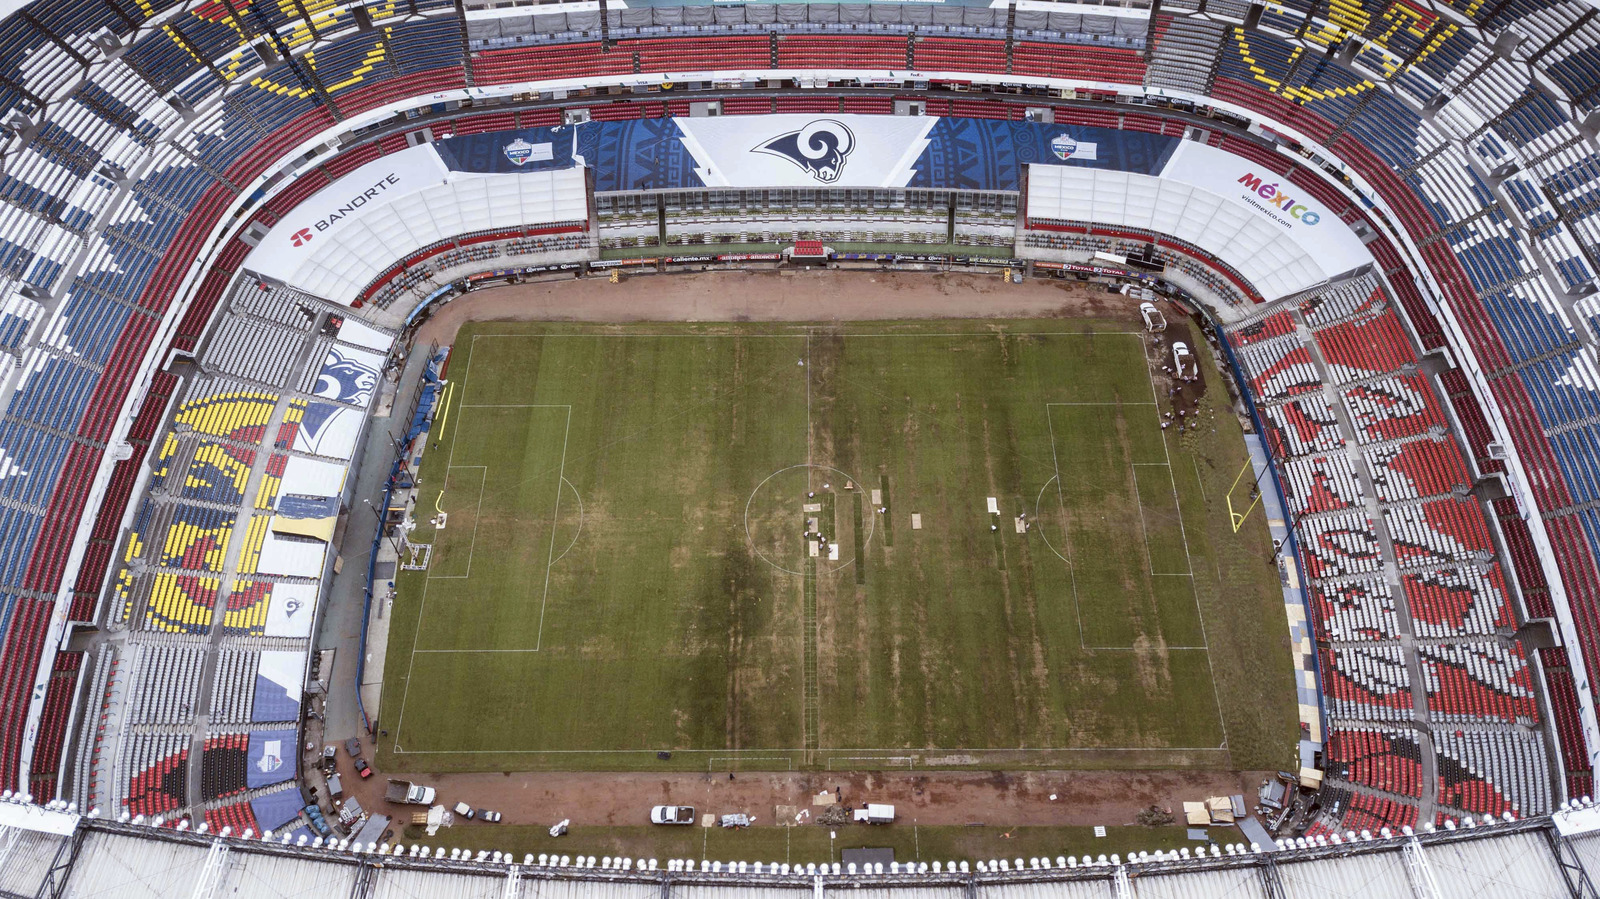 Vista área del Estadio Azteca a menos de una semana de la fecha programada para el juego de la NFL.